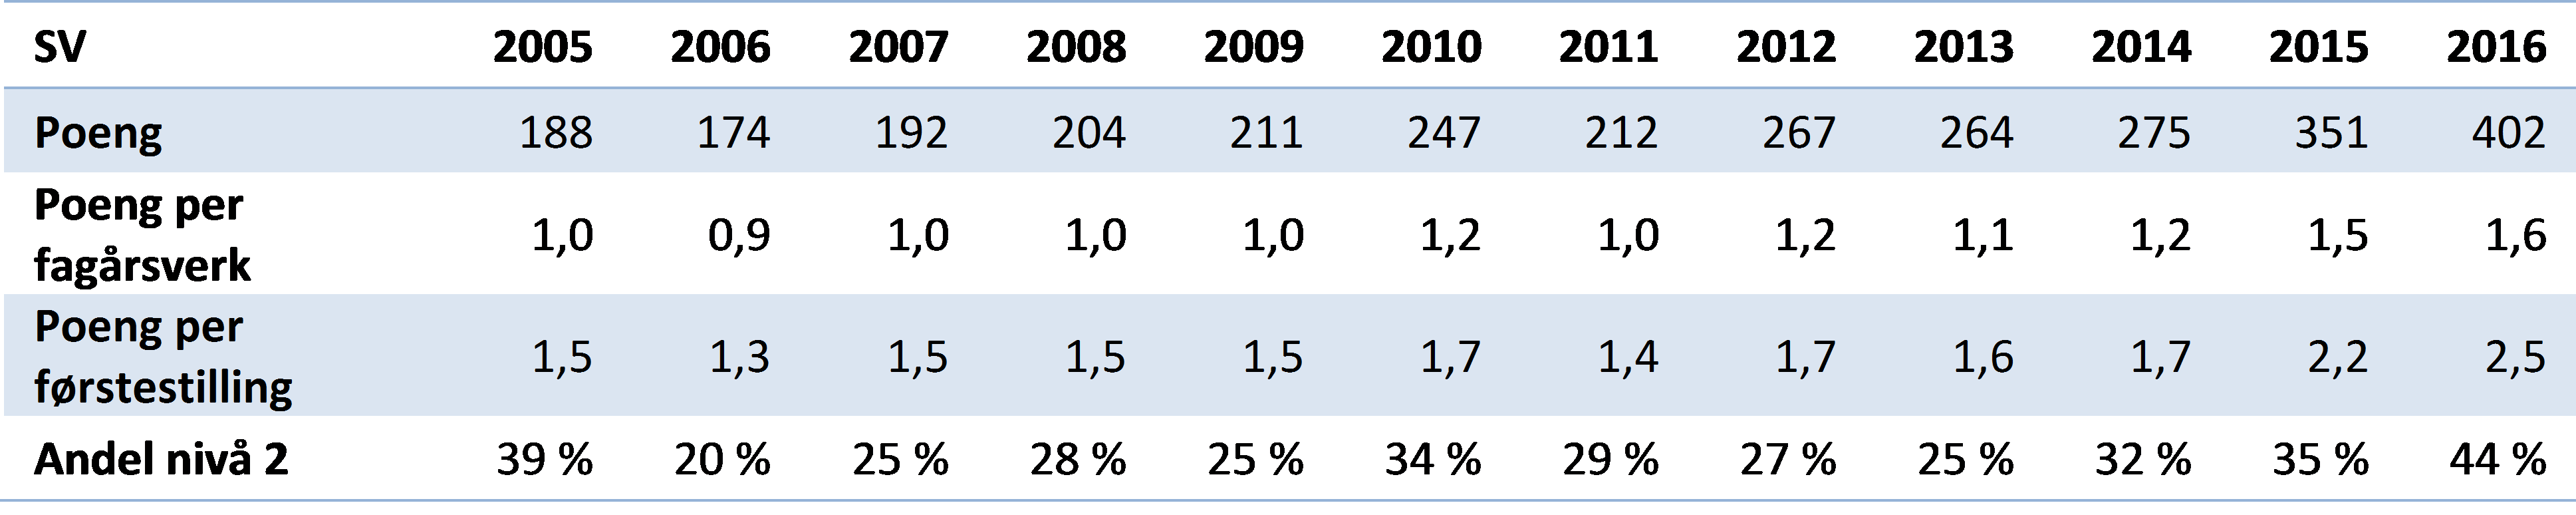 Tabell 1 Hovedindikatorer for publisering ved Det samfunnsvitenskapelige fakultet, 2005-2016 (DBH).